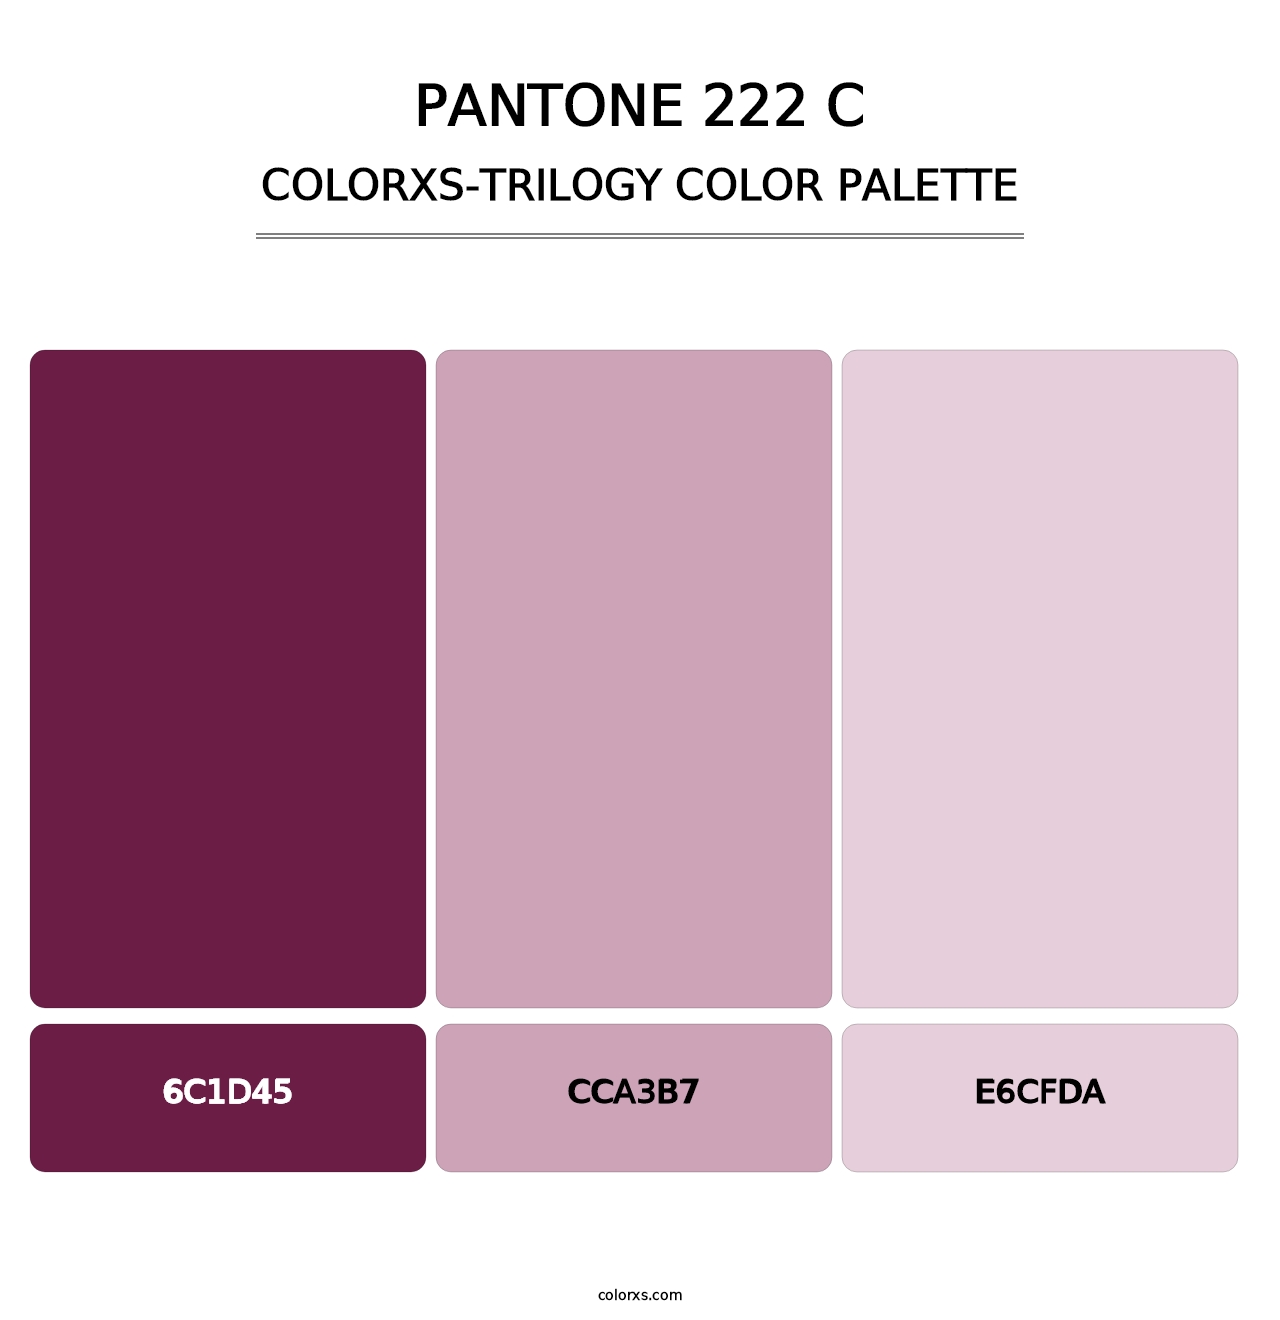 PANTONE 222 C - Colorxs Trilogy Palette